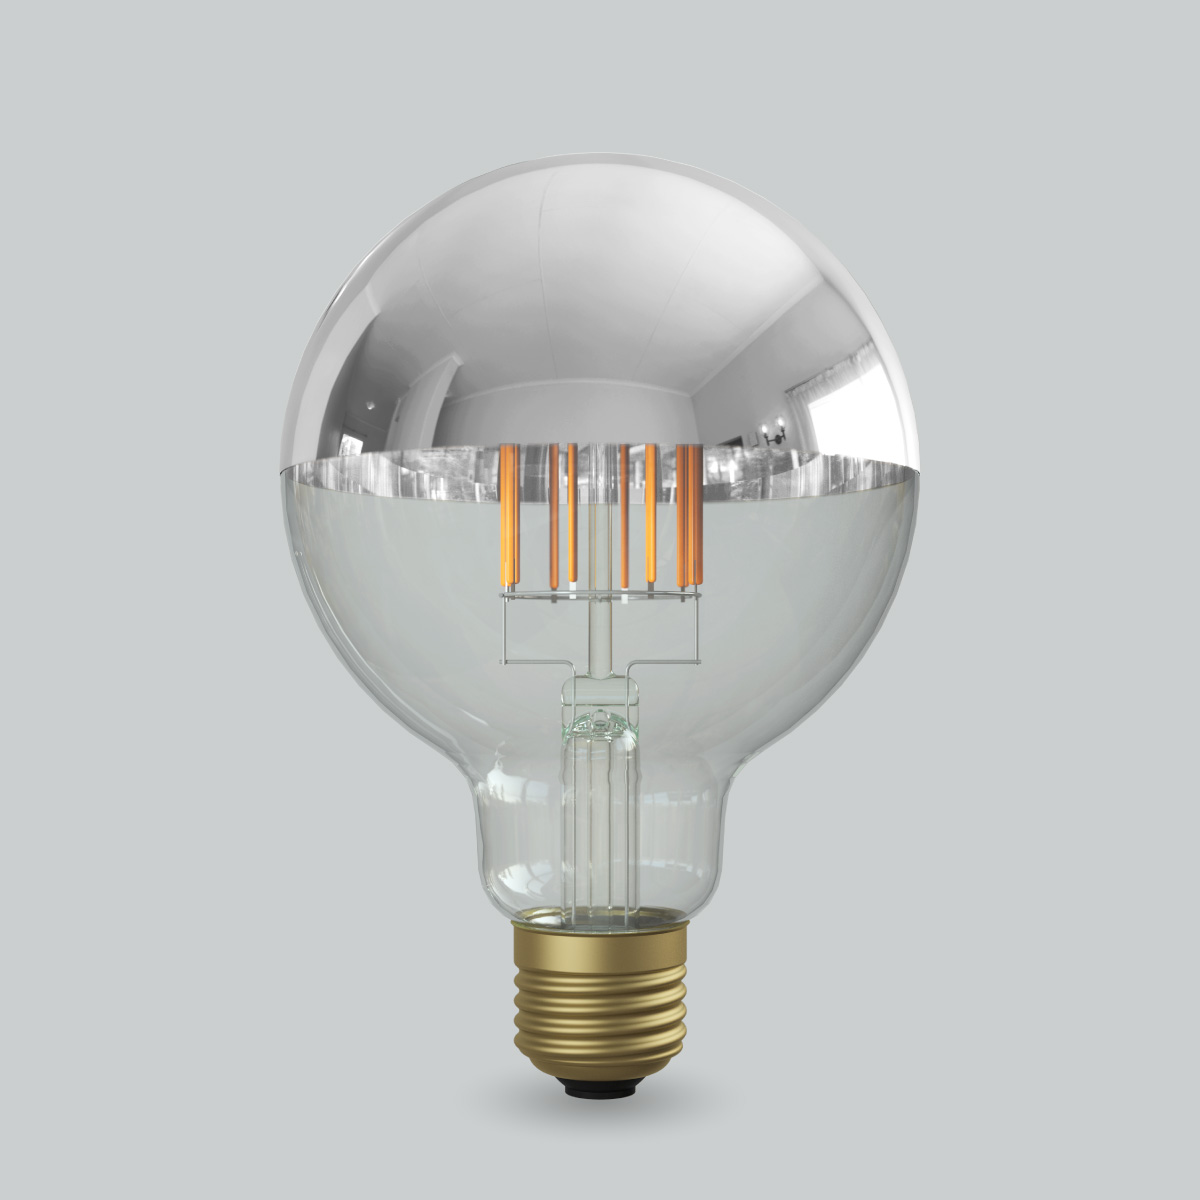 フィラメントLED電球「Siphon」| 製品ラインナップOnly One